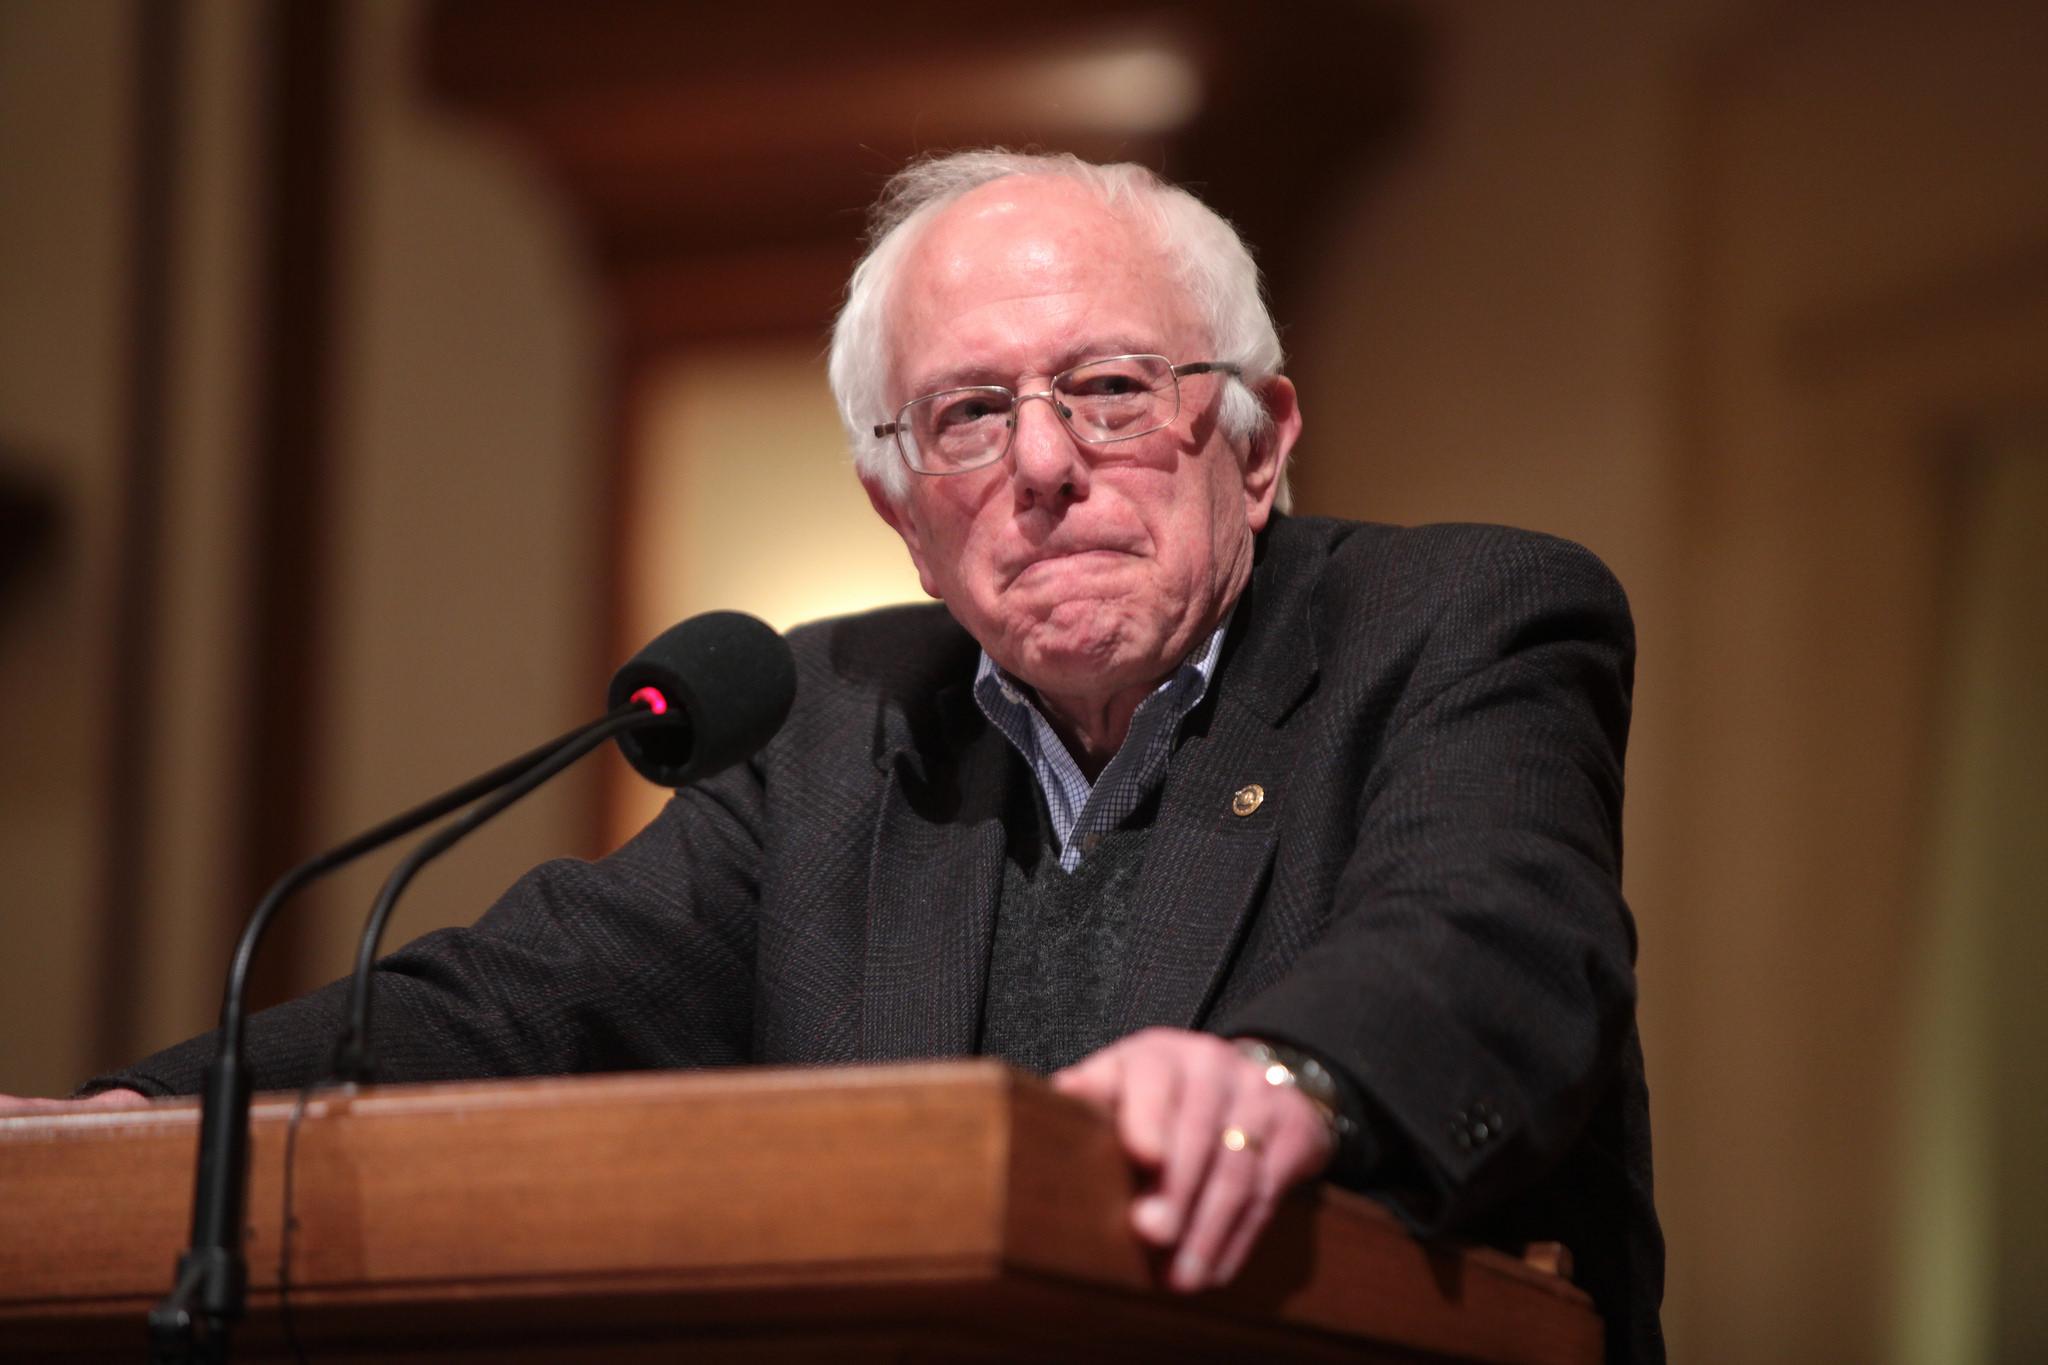 U.S. Sen. Bernie Sanders speaks in in Des Moines, Iowa, in January 2016. (Gage Skidmore / Flickr)